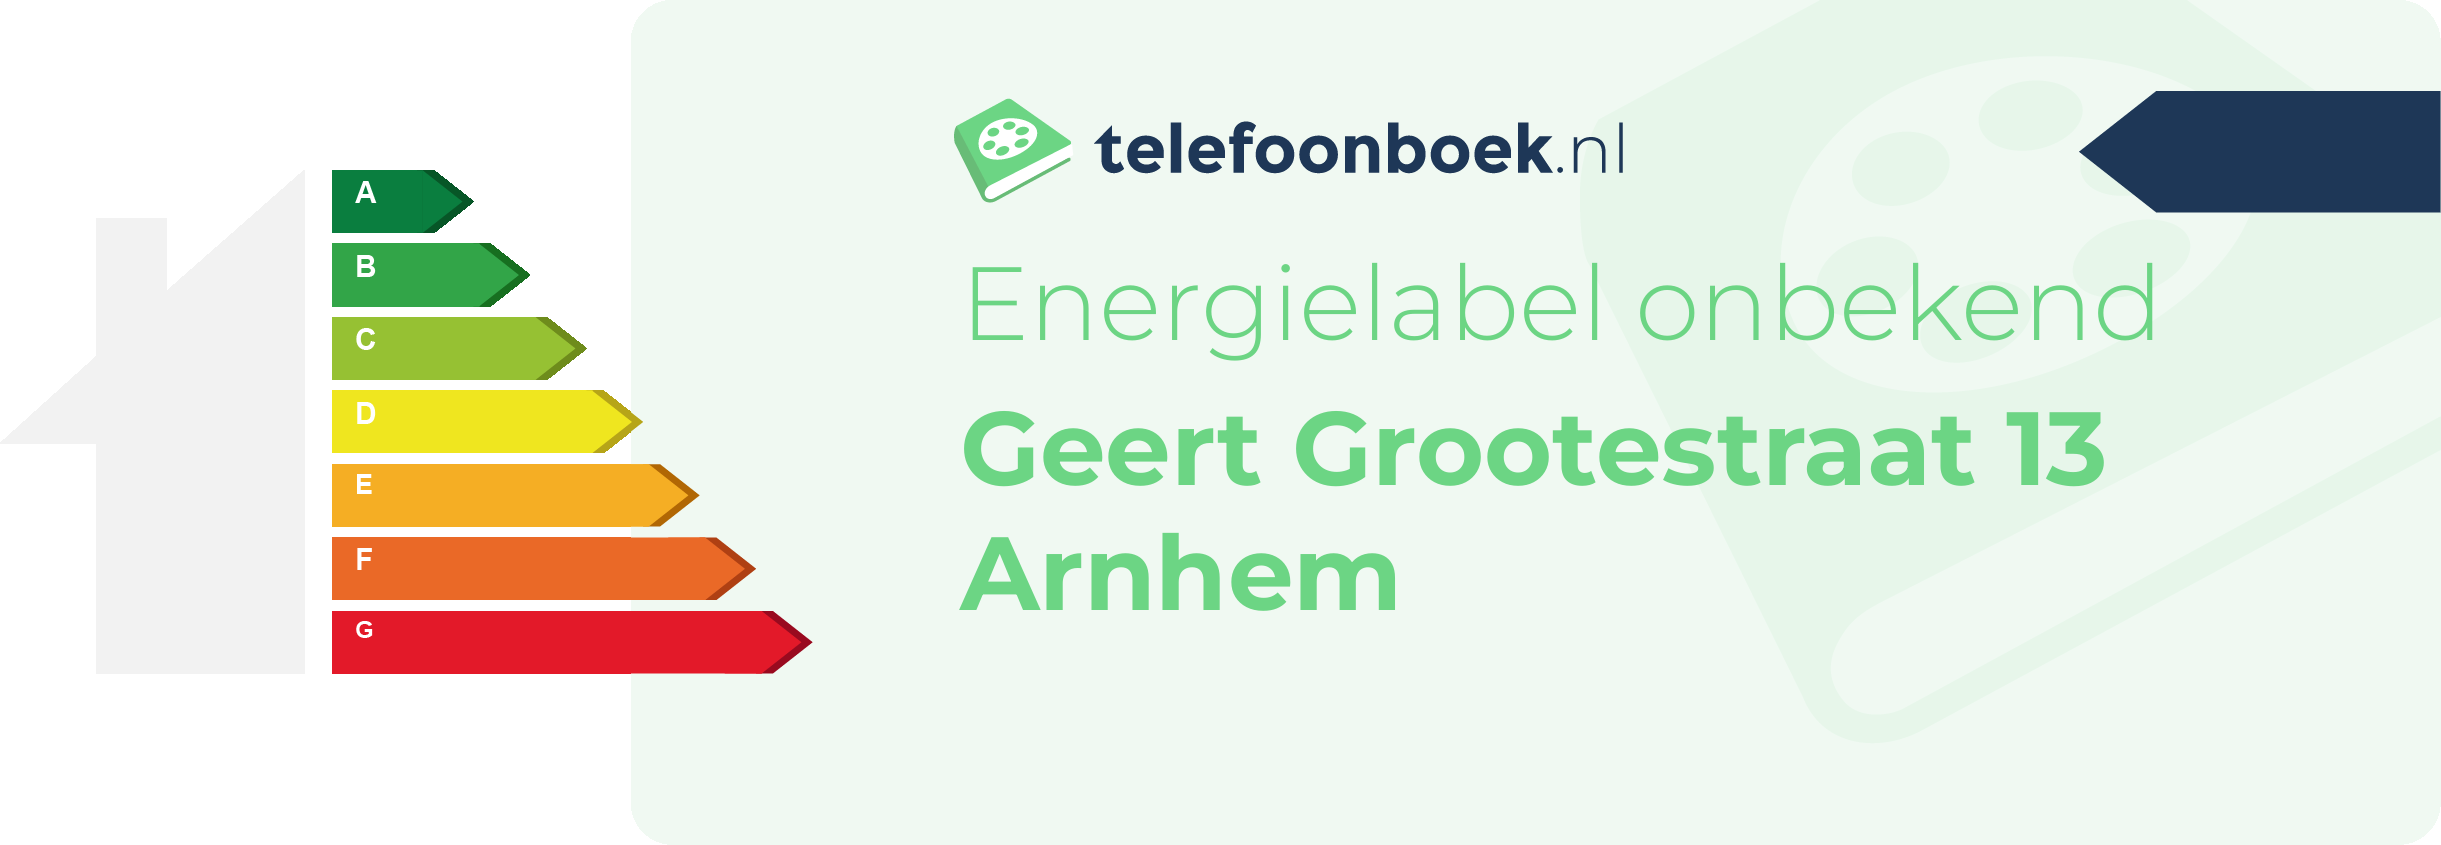 Energielabel Geert Grootestraat 13 Arnhem